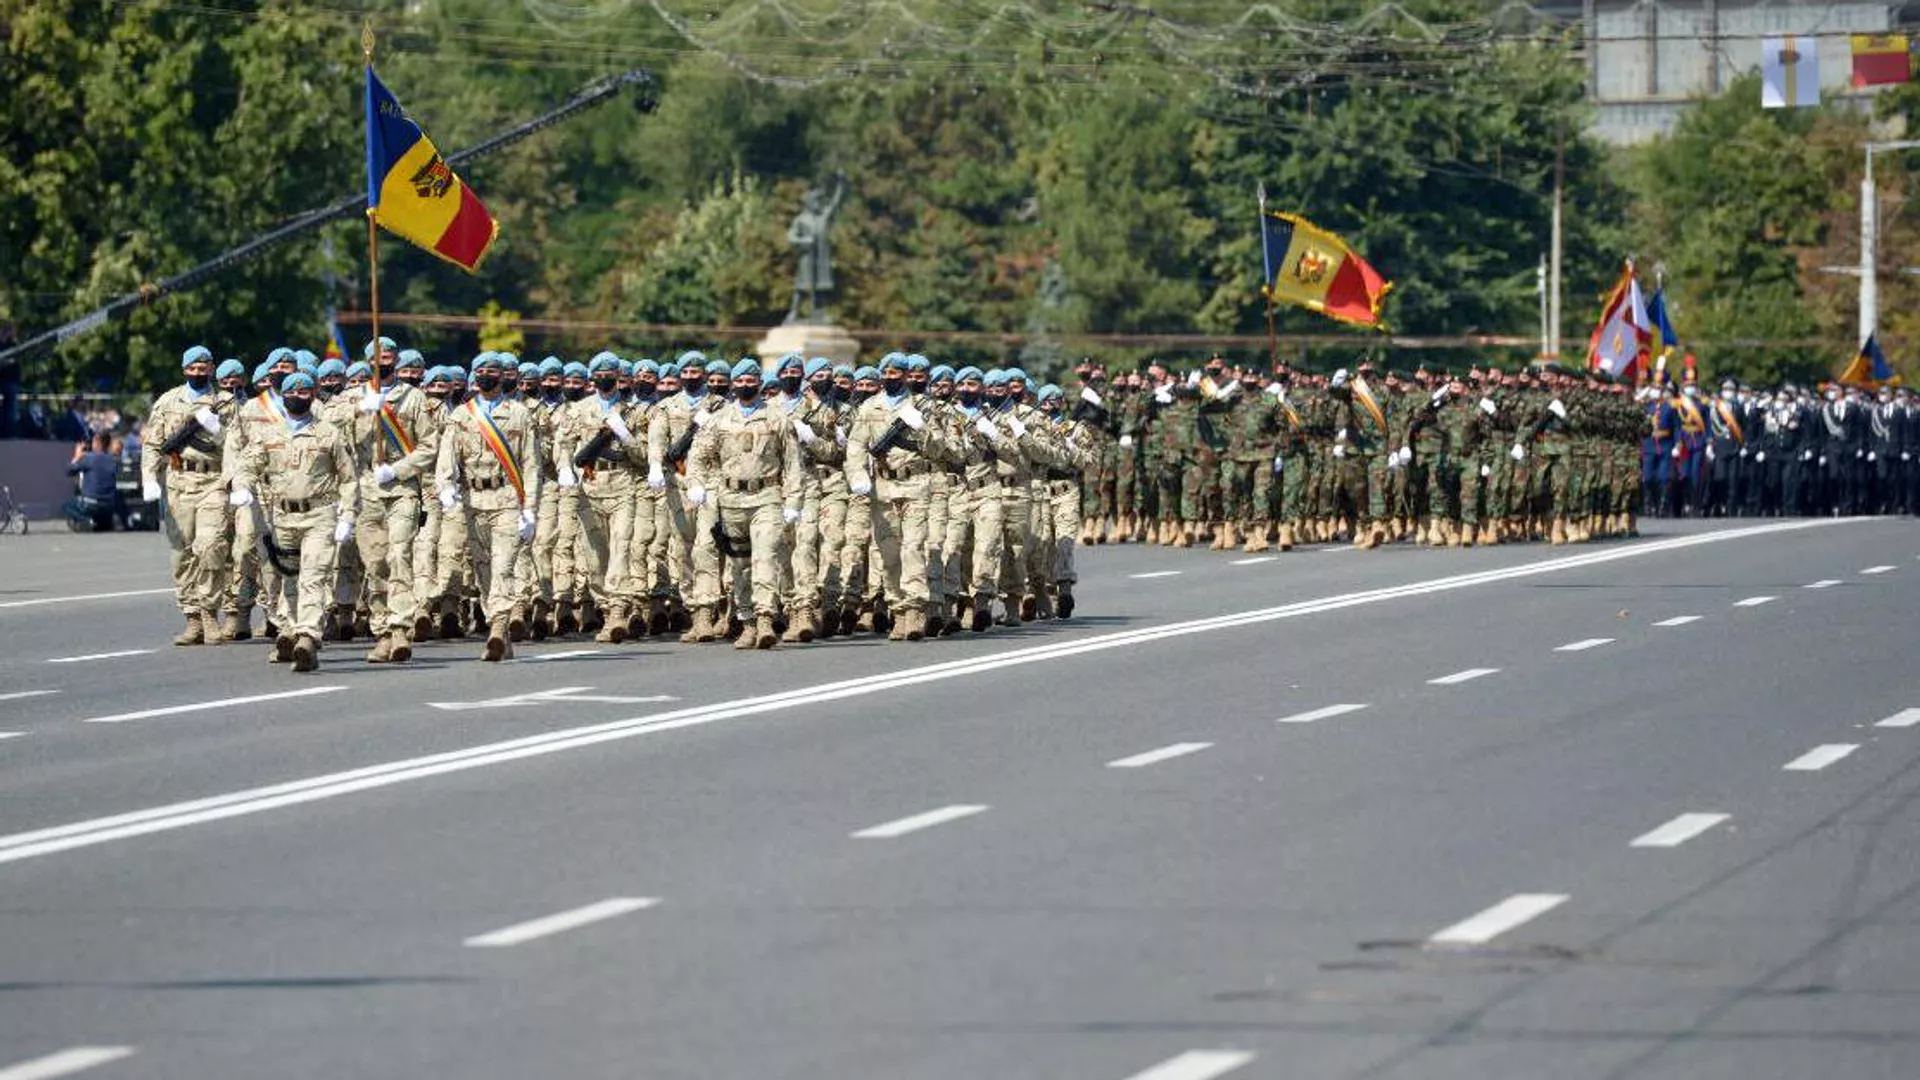 Молдавия накапливает военную технику у Приднестровья, заявили в ПМР